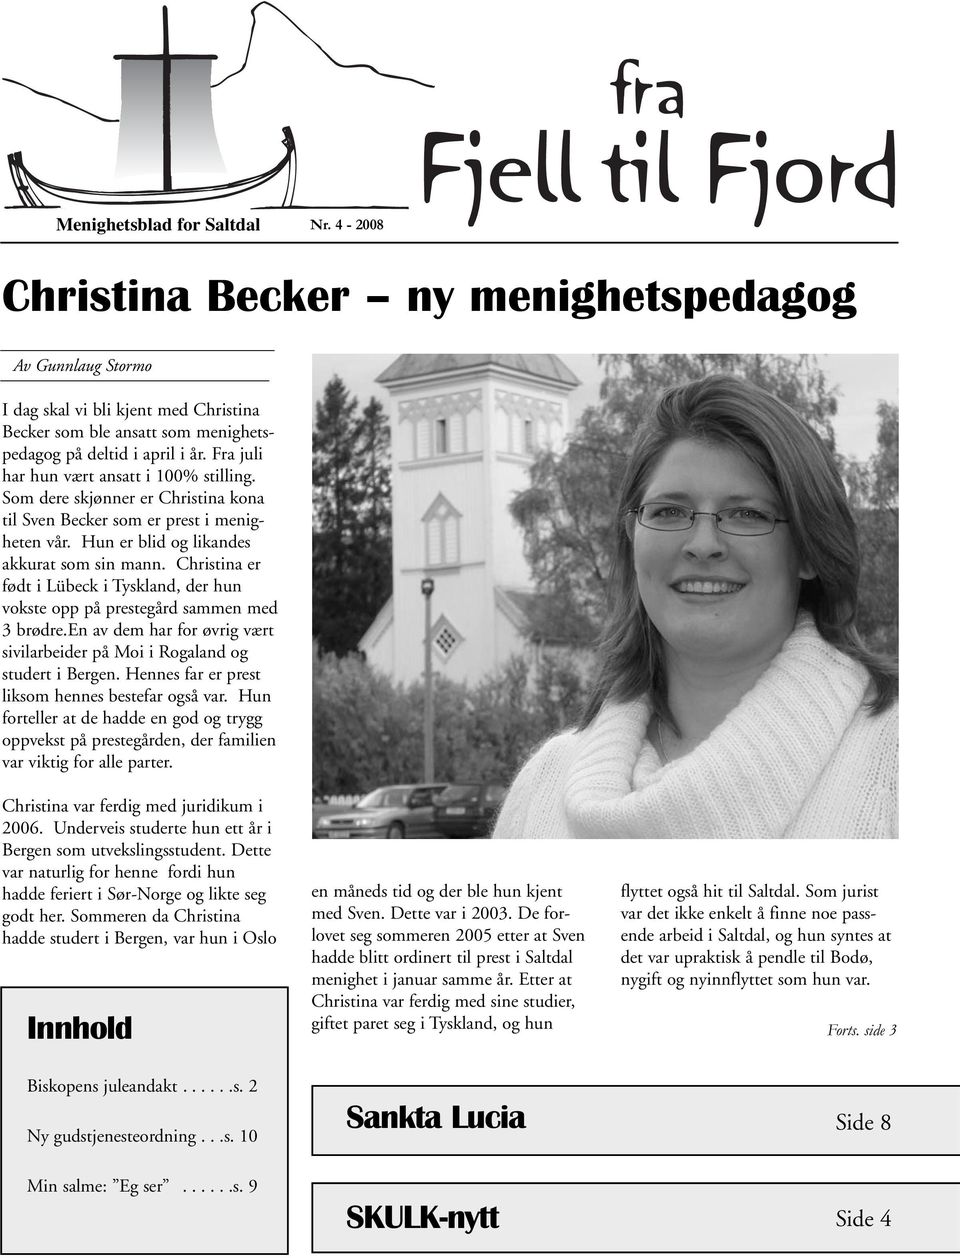 Christina er født i Lübeck i Tyskland, der hun vokste opp på prestegård sammen med 3 brødre.en av dem har for øvrig vært sivilarbeider på Moi i Rogaland og studert i Bergen.